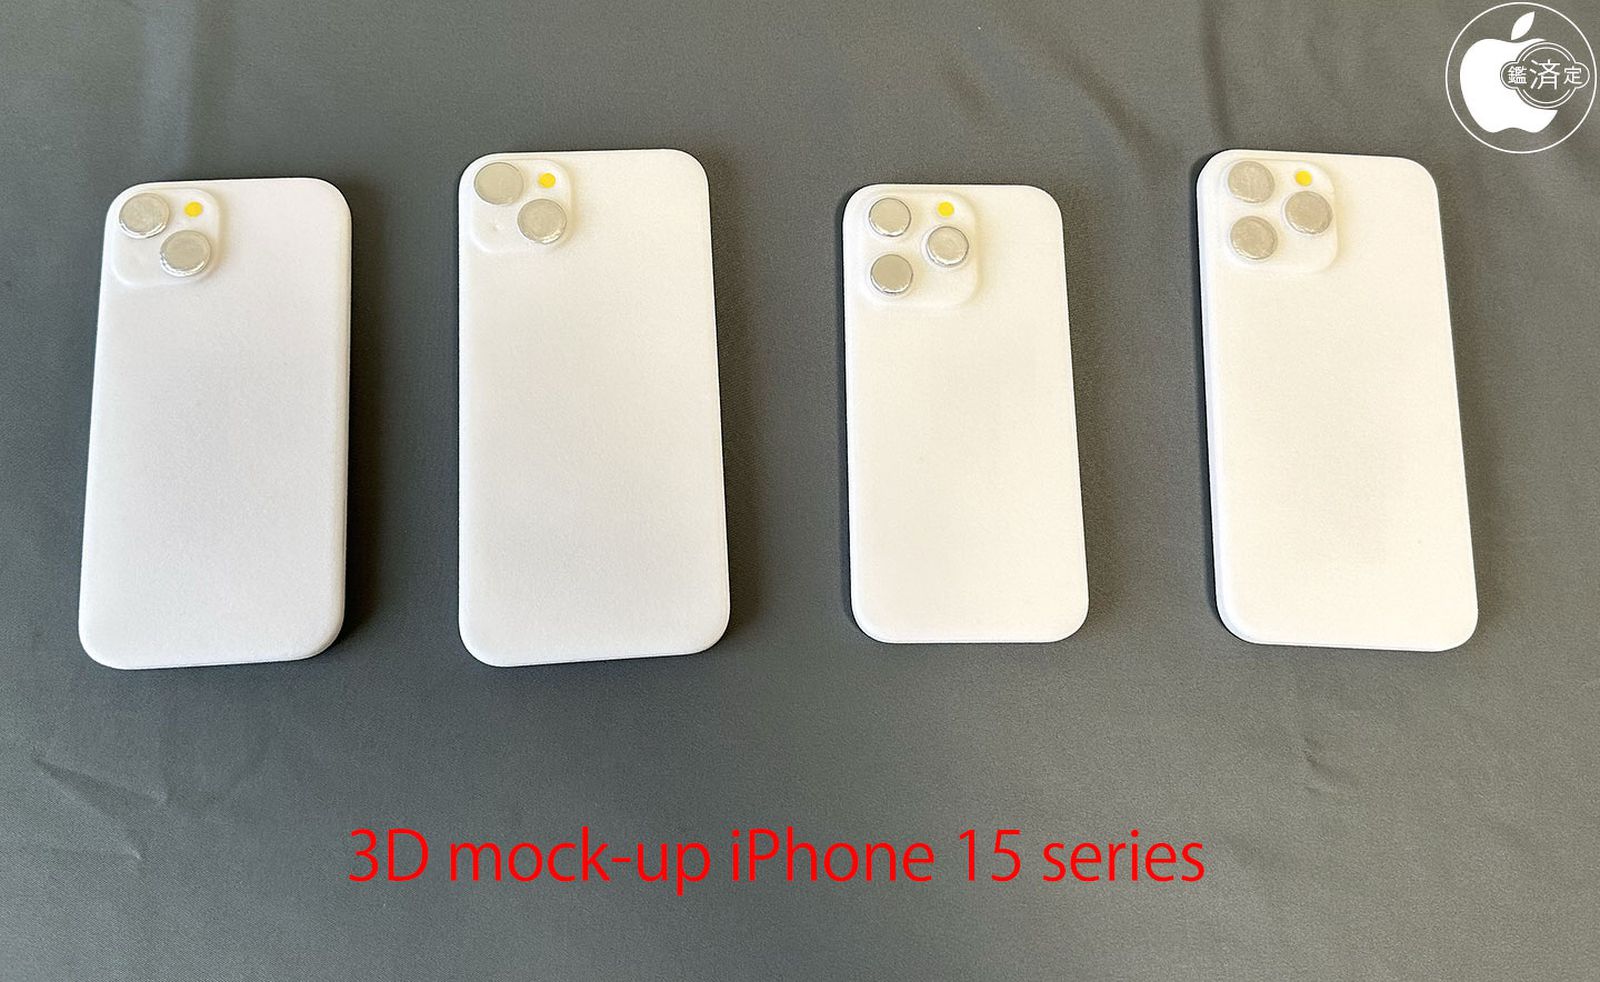 Отпечатанные на 3D-принтере макеты iPhone 15 протестировали на совместимость с чехлами для iPhone 14